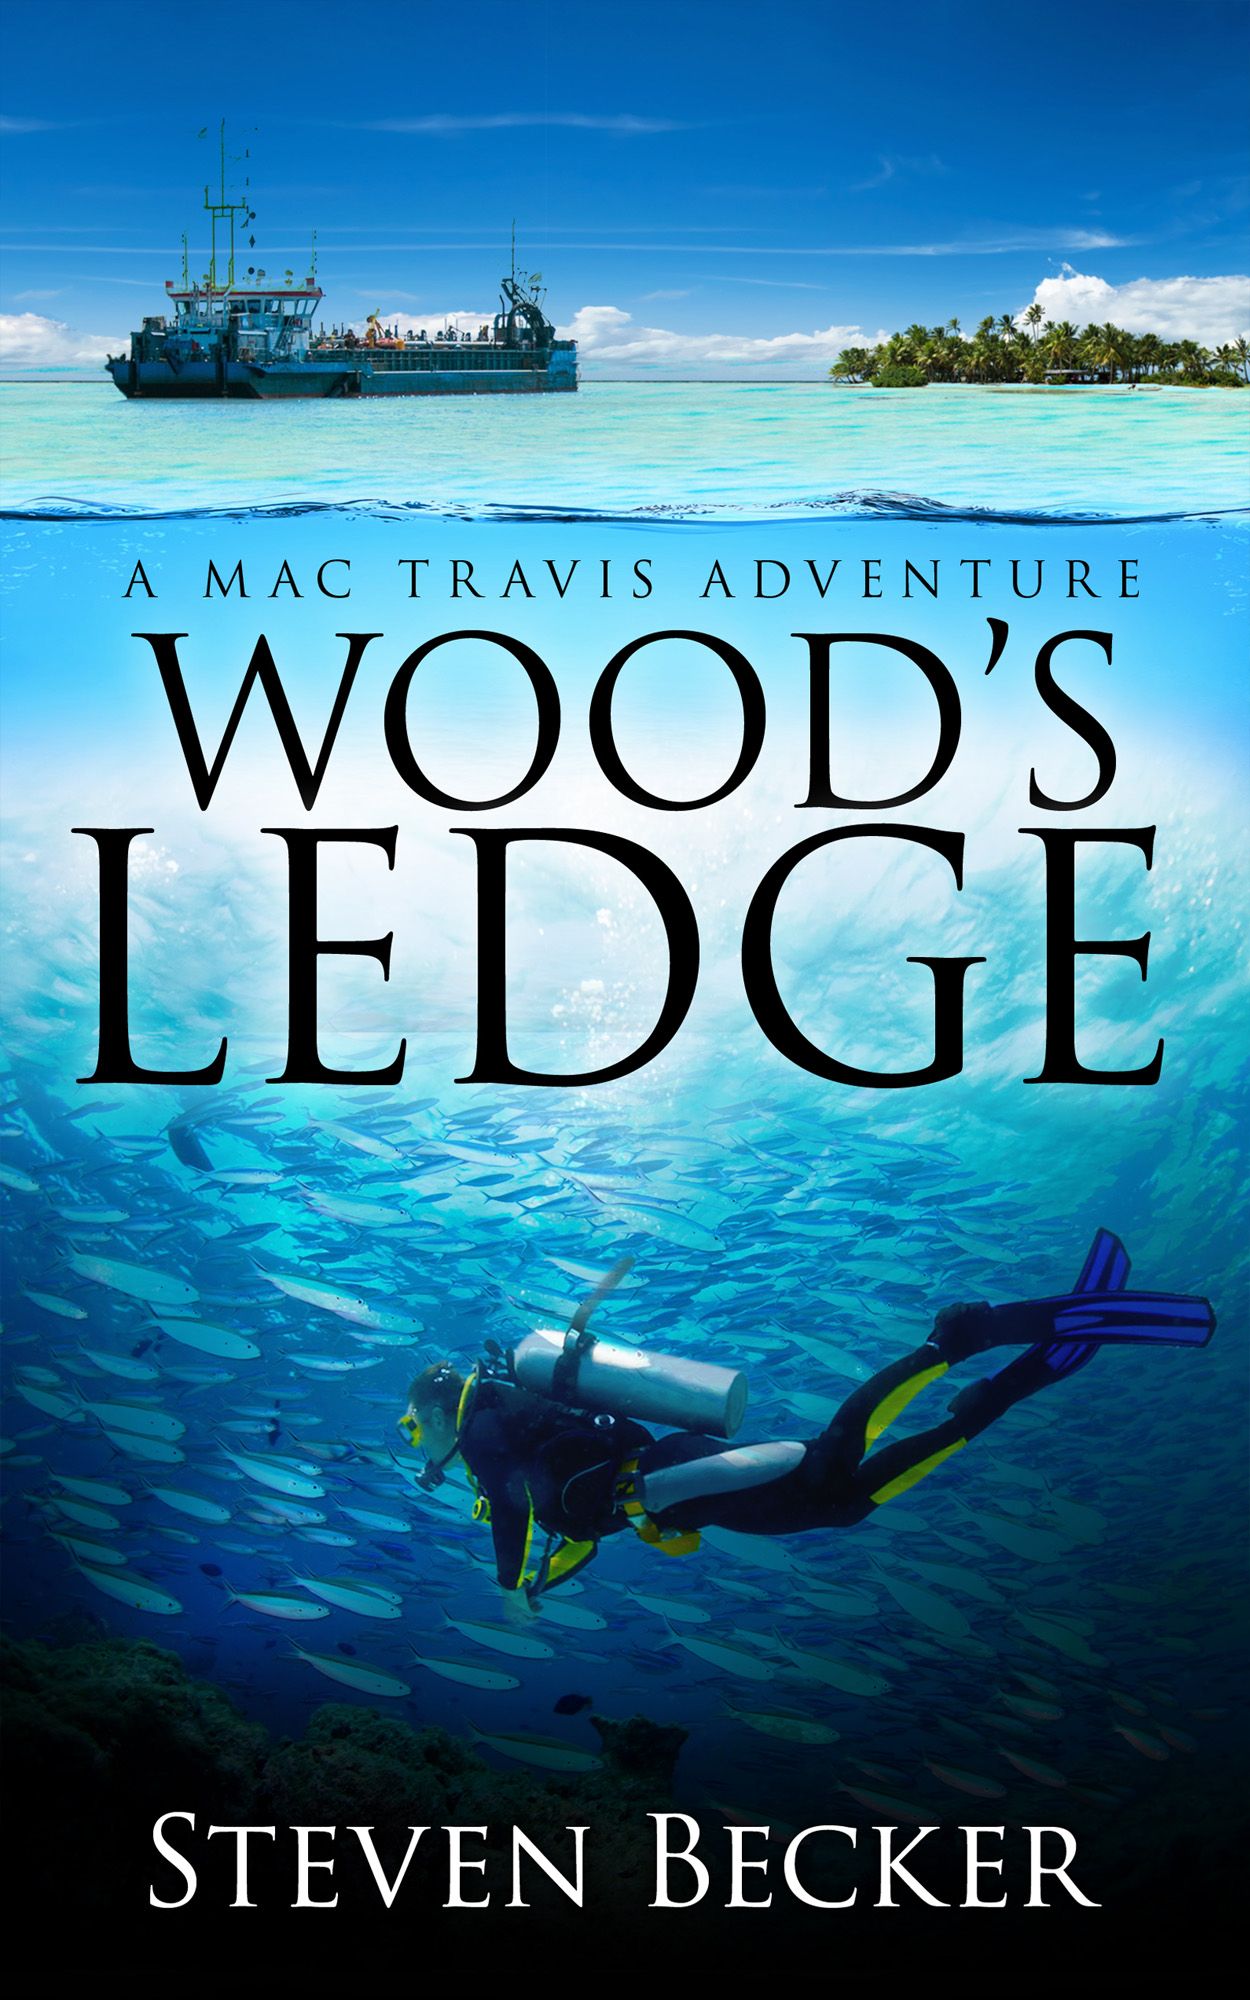 Wood's Ledge